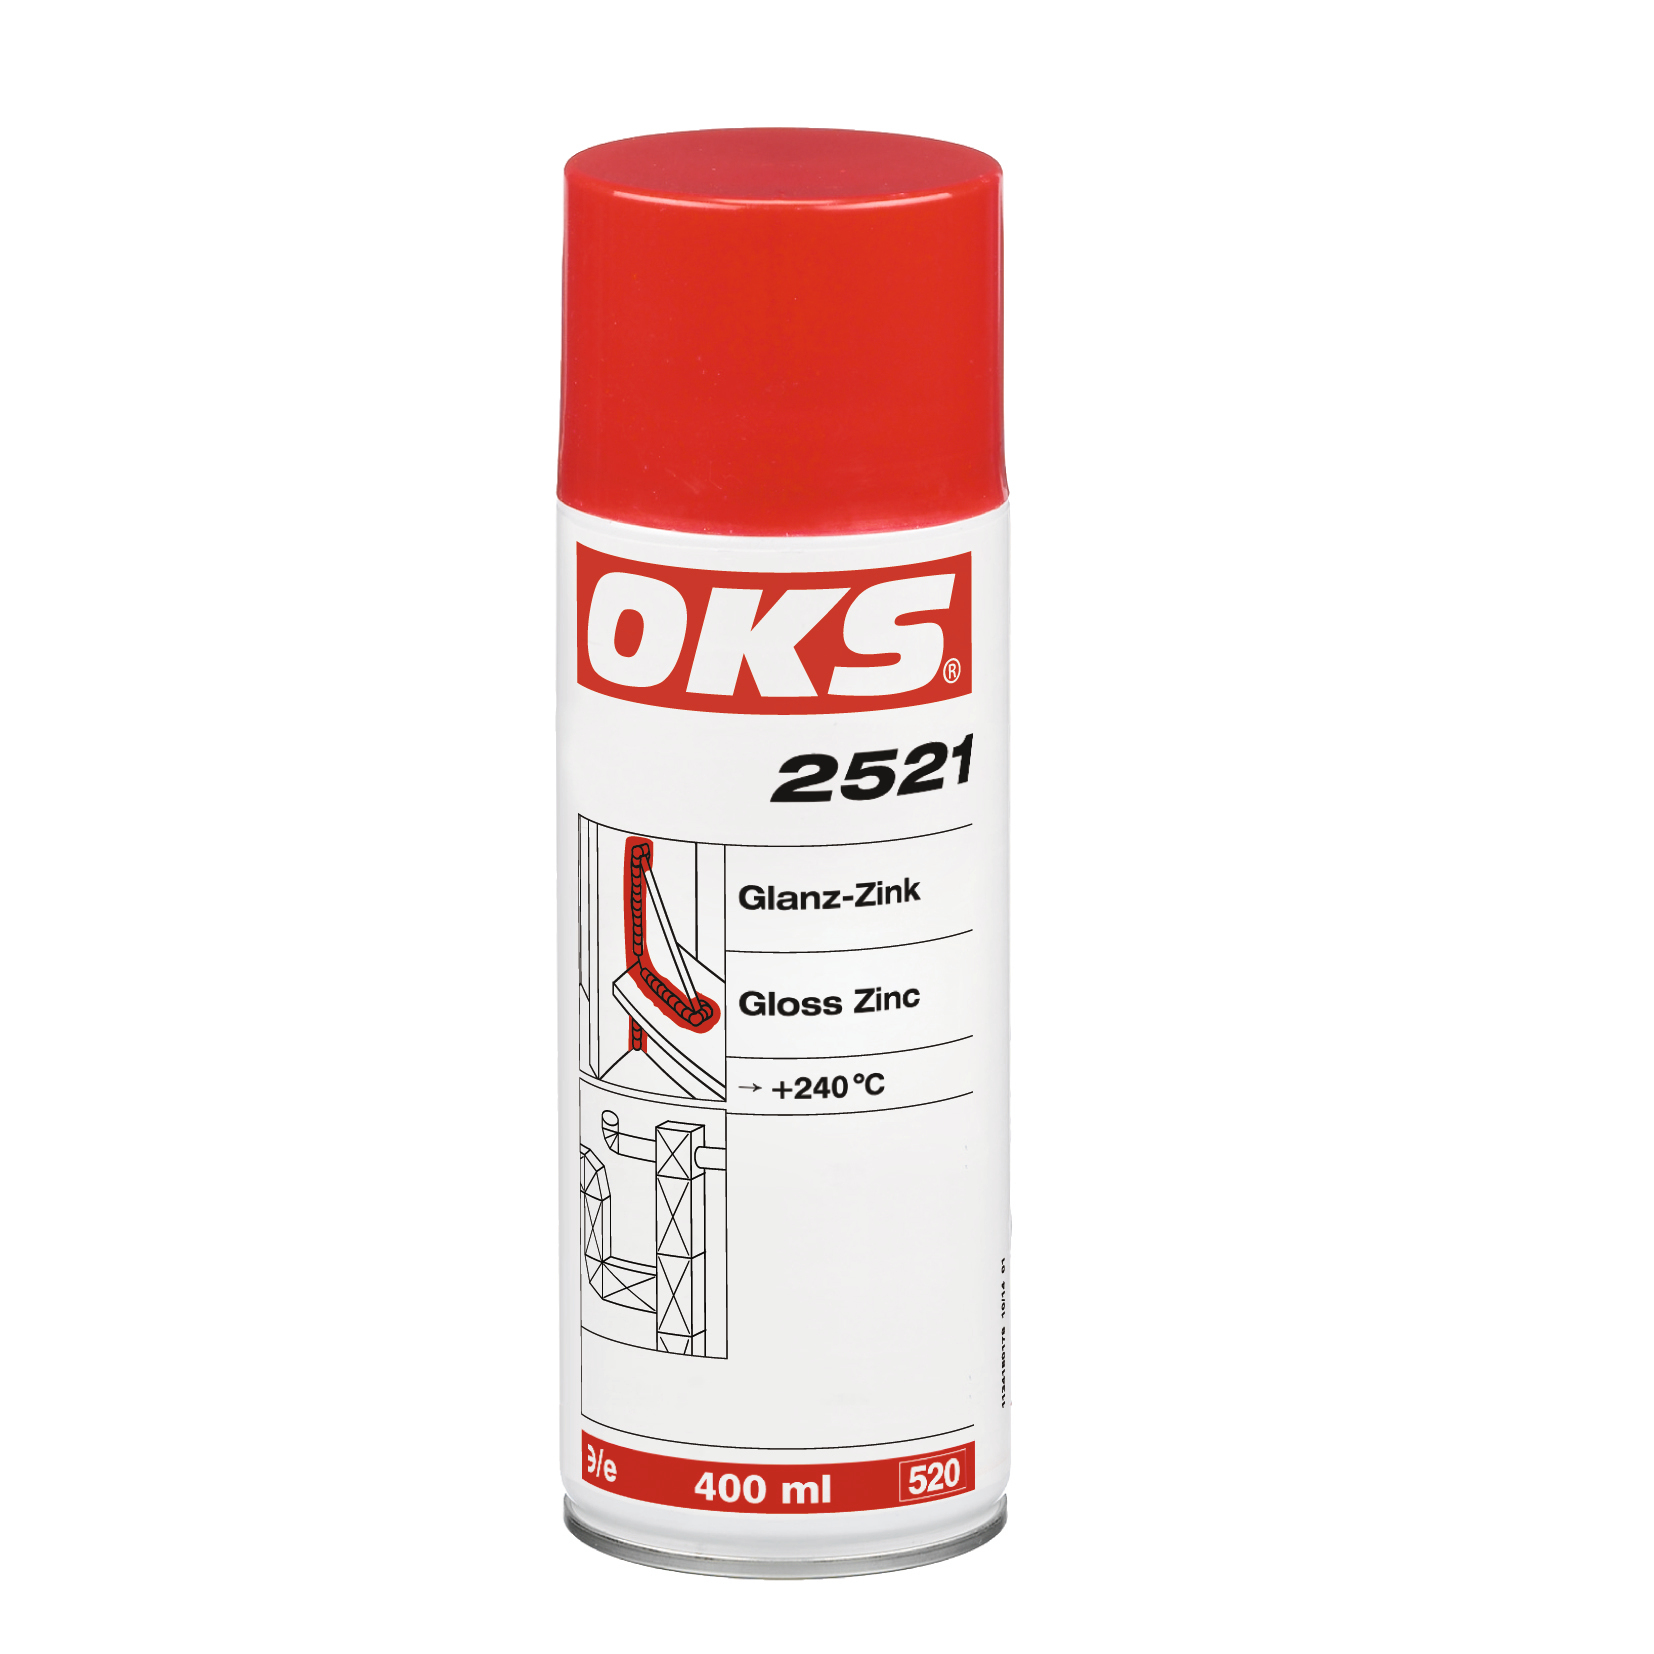 OKS 2521 Glans-Zinkspray, 400 ml